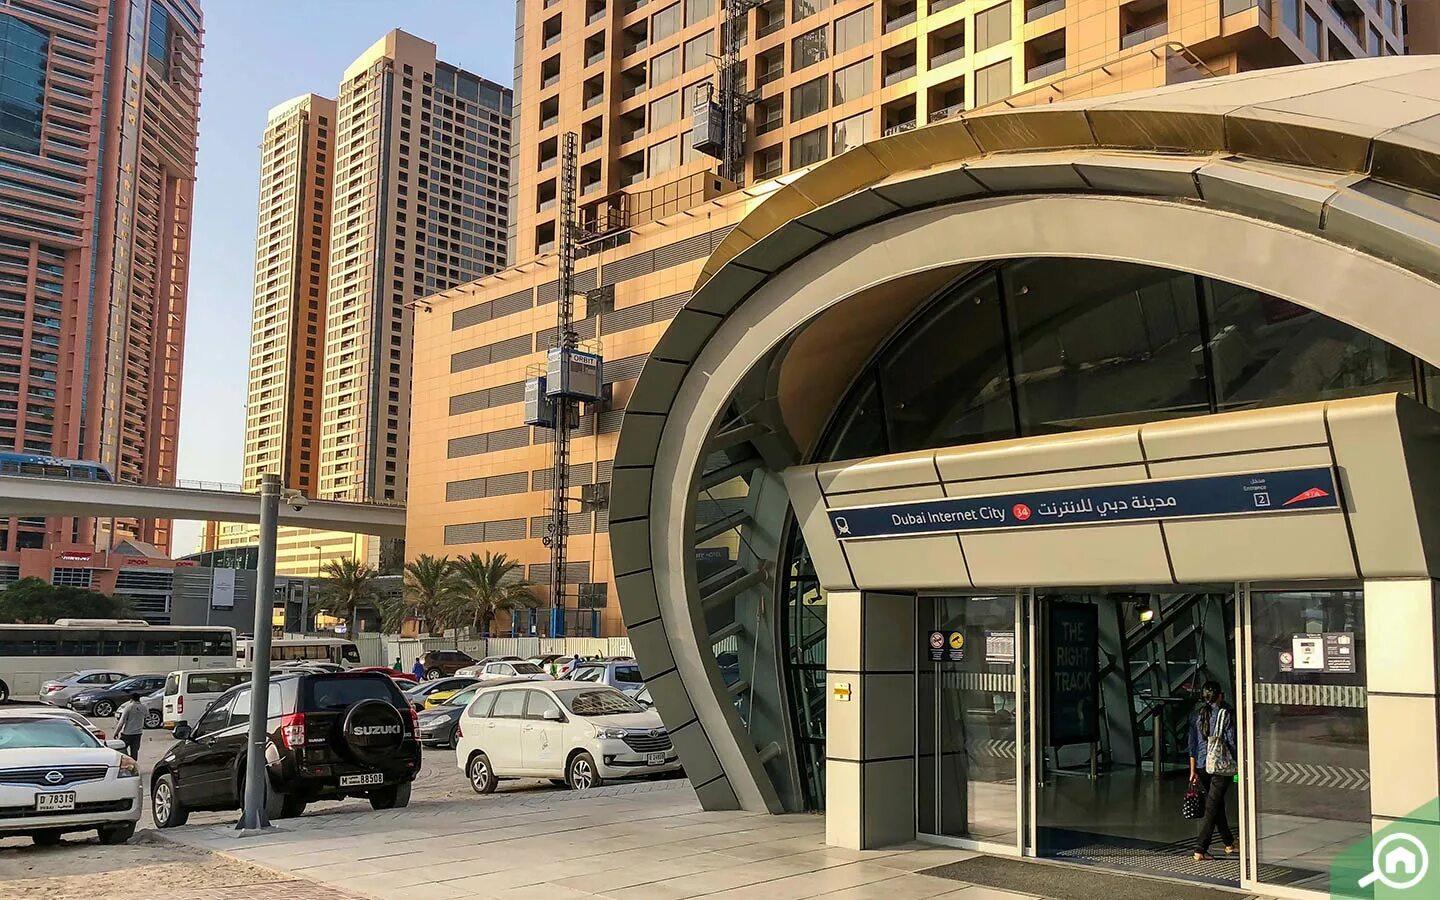 Дубай интернет сити. Метро tecom Dubai. Станция метро Dubai Internet City. Метро Дубай Internet Metro Station. Станция метро Mashreq Дубай.